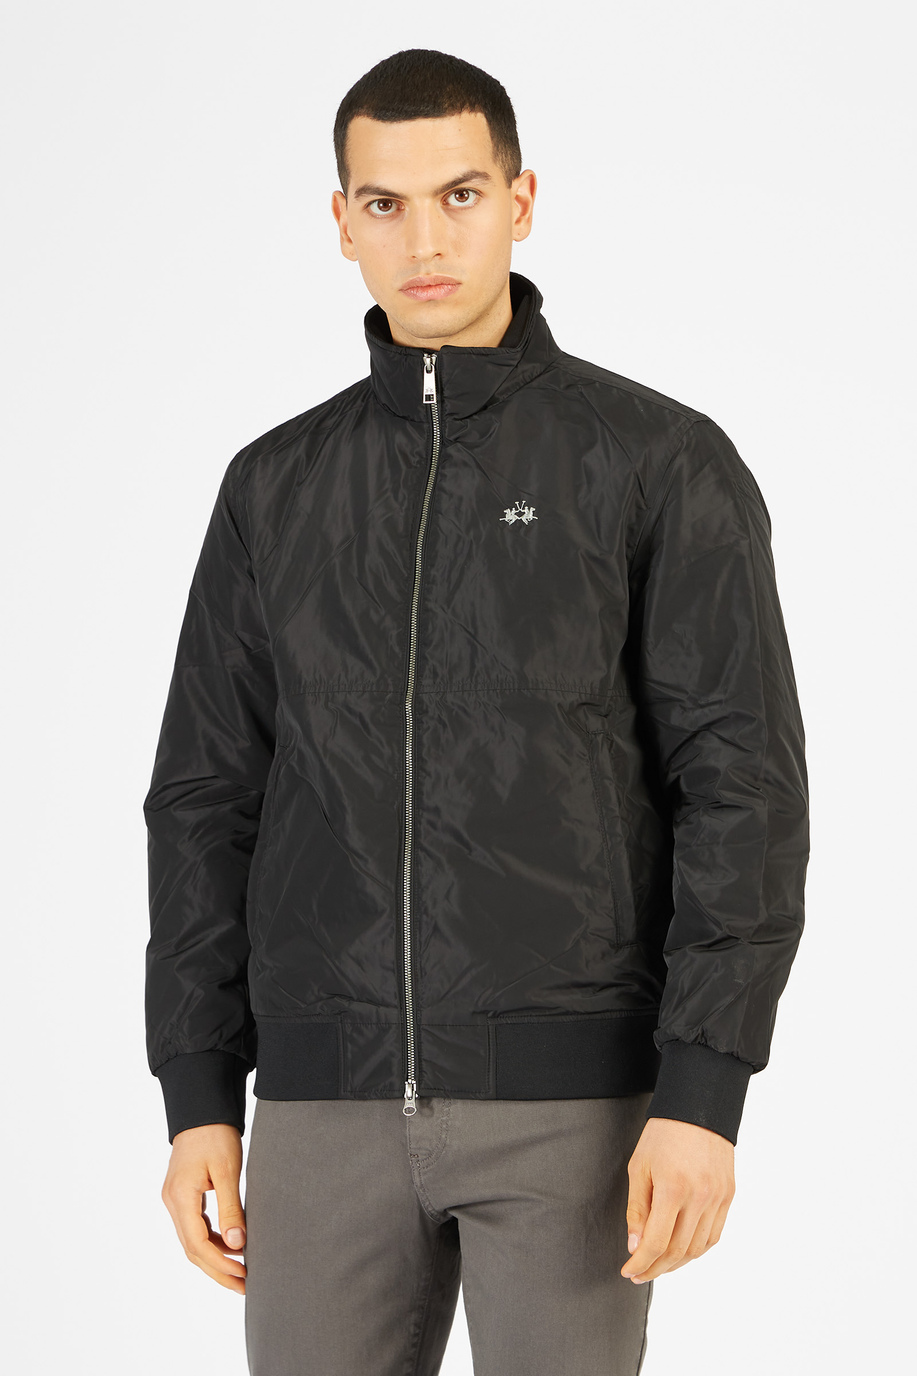 Men’s jacket in nylon regular fit model - Rainproof & Windproof | La Martina - Official Online Shop